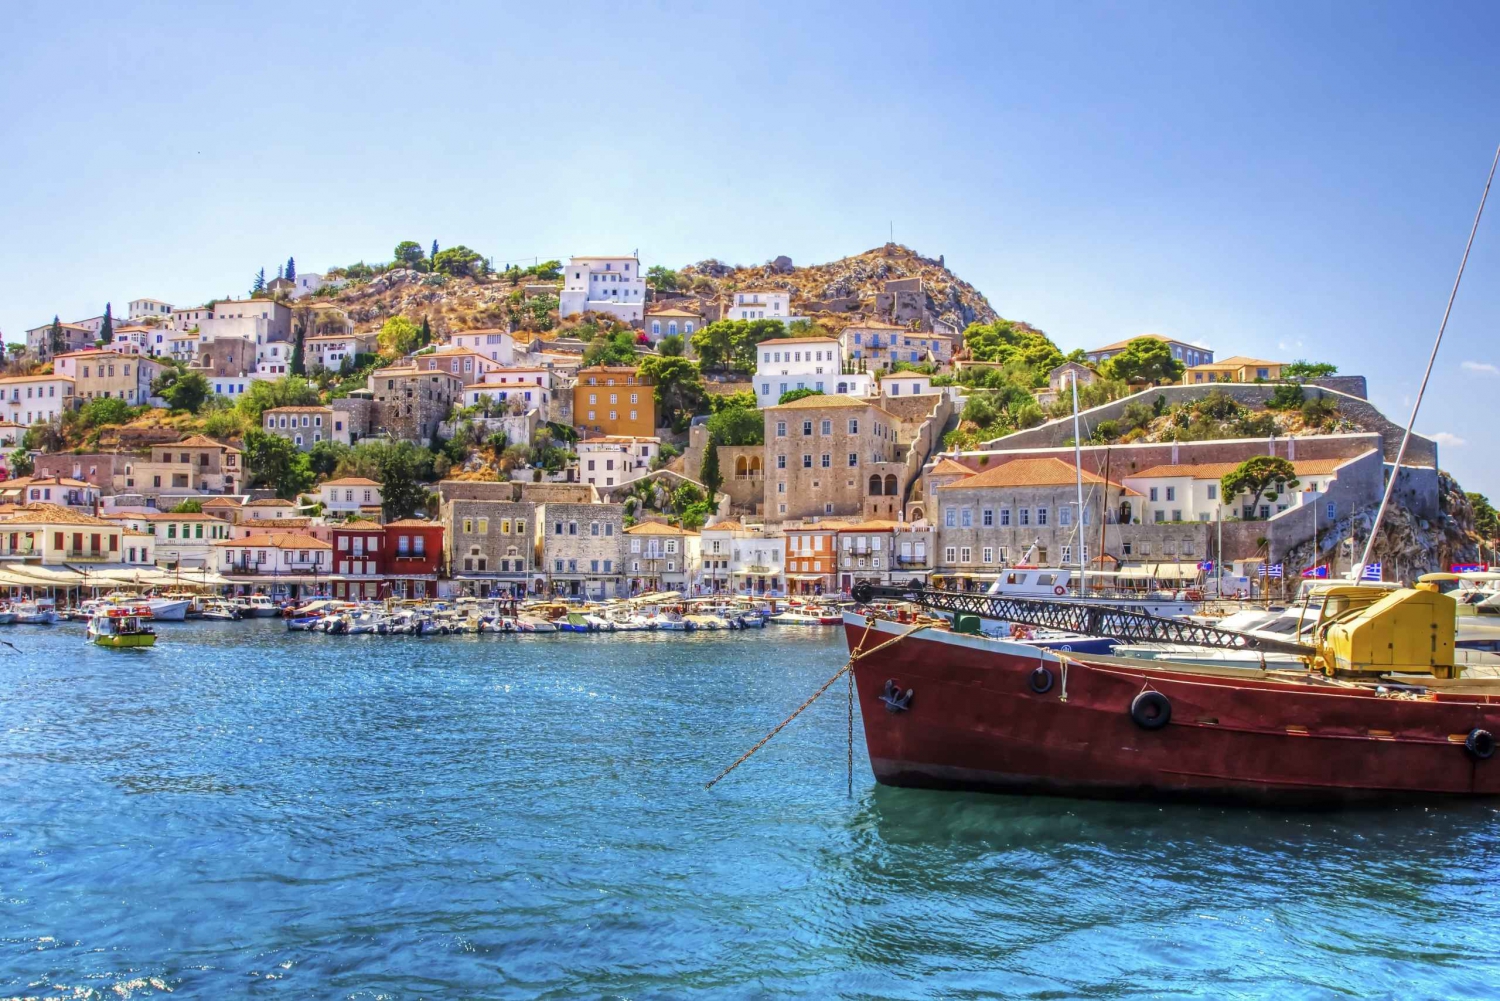 Från Aten: Heldagskryssning på Saroniska öarna med VIP-platser